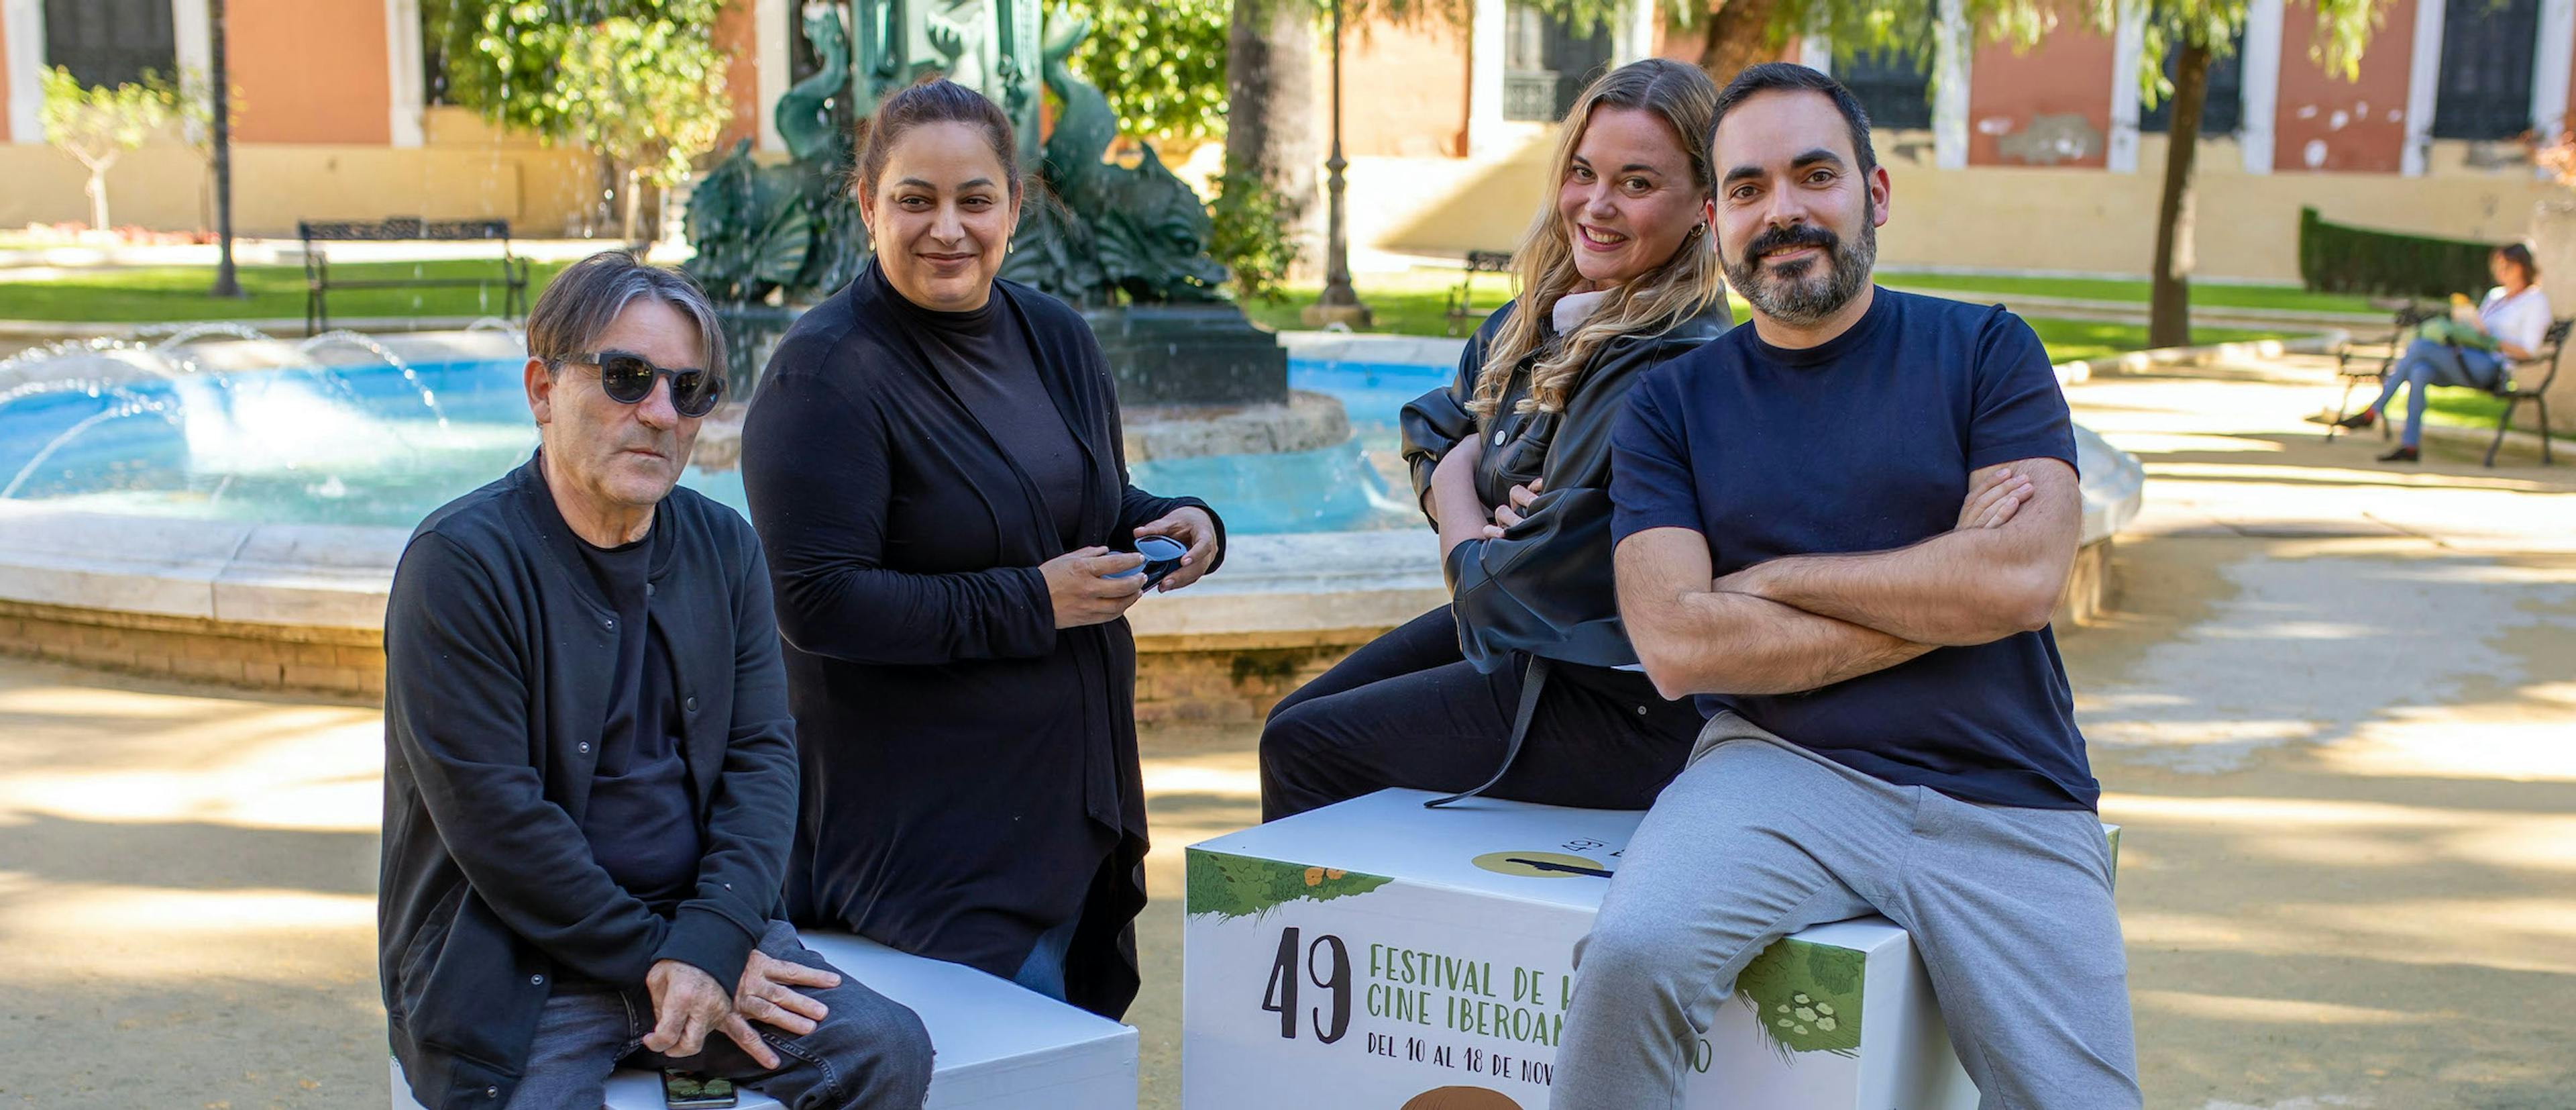 Javier Tolentino, Estrella Araiza, Clara Nieto y David Martos forman parte del jurado oficial de la 49 edición del Festival de Huelva